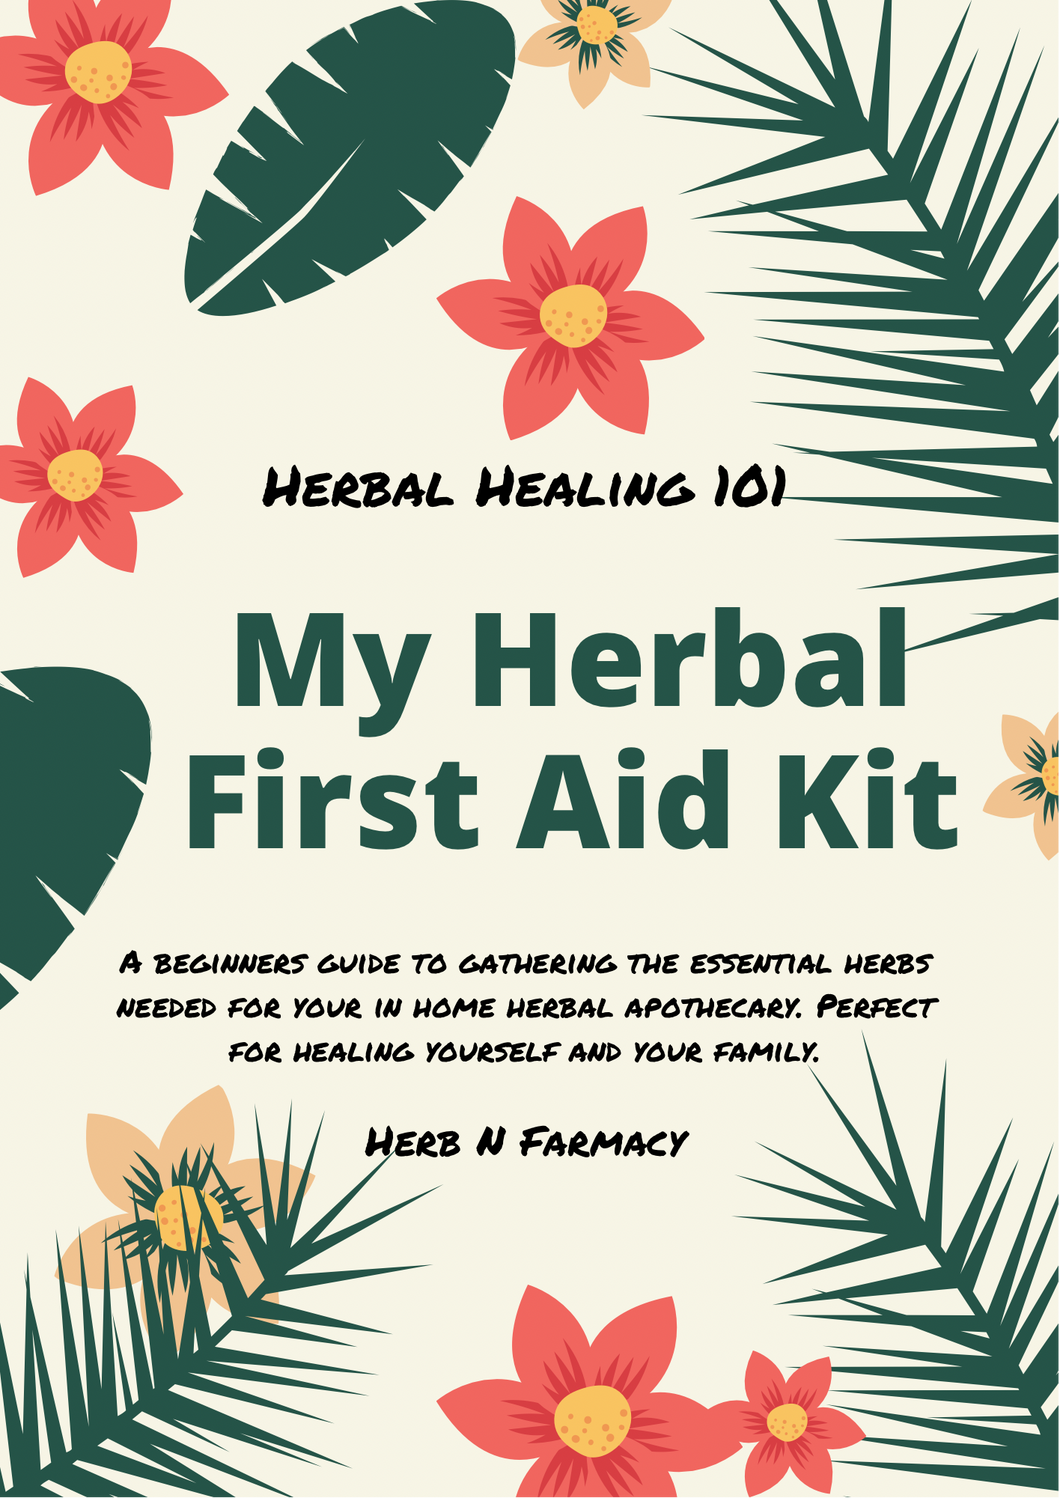 Herbal Healing 101 E-Guide